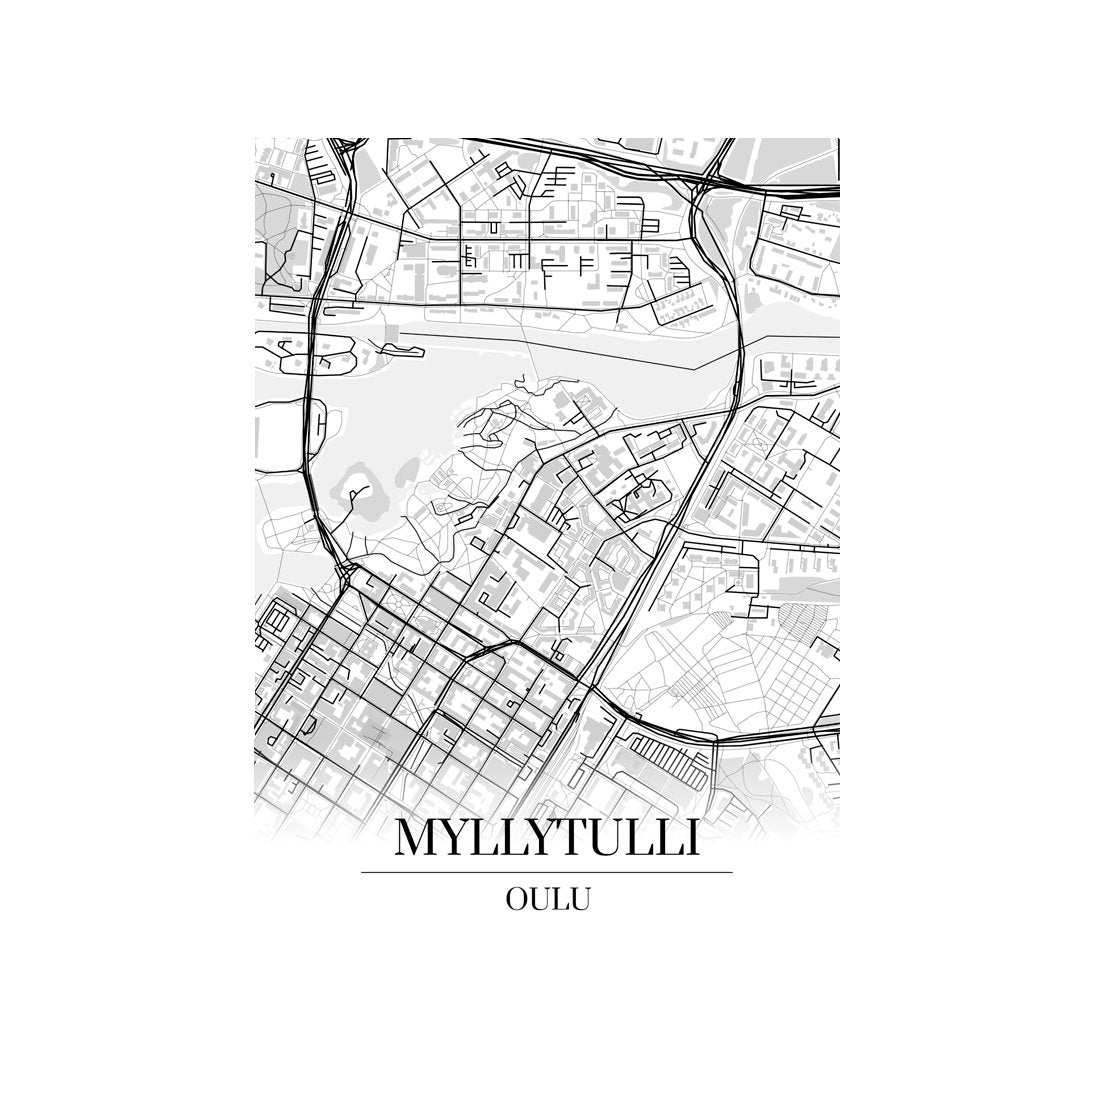 Myllytulli‎